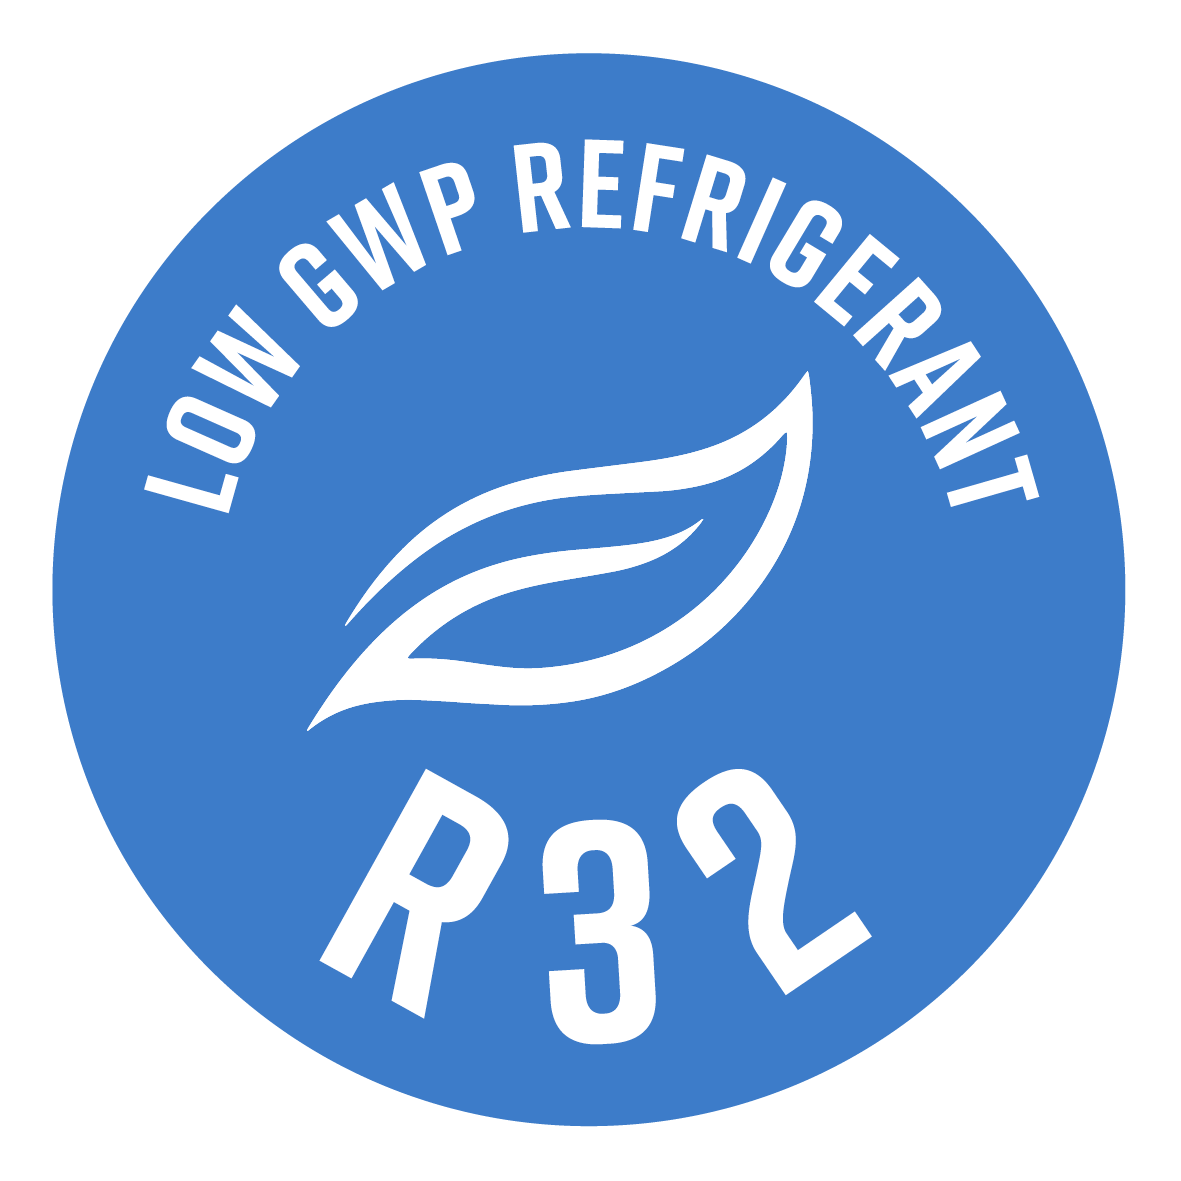 Utiliza el refrigerante R32, caracterizado para un efecto invernadero reducido de casi el 70% (respecto al R410A).